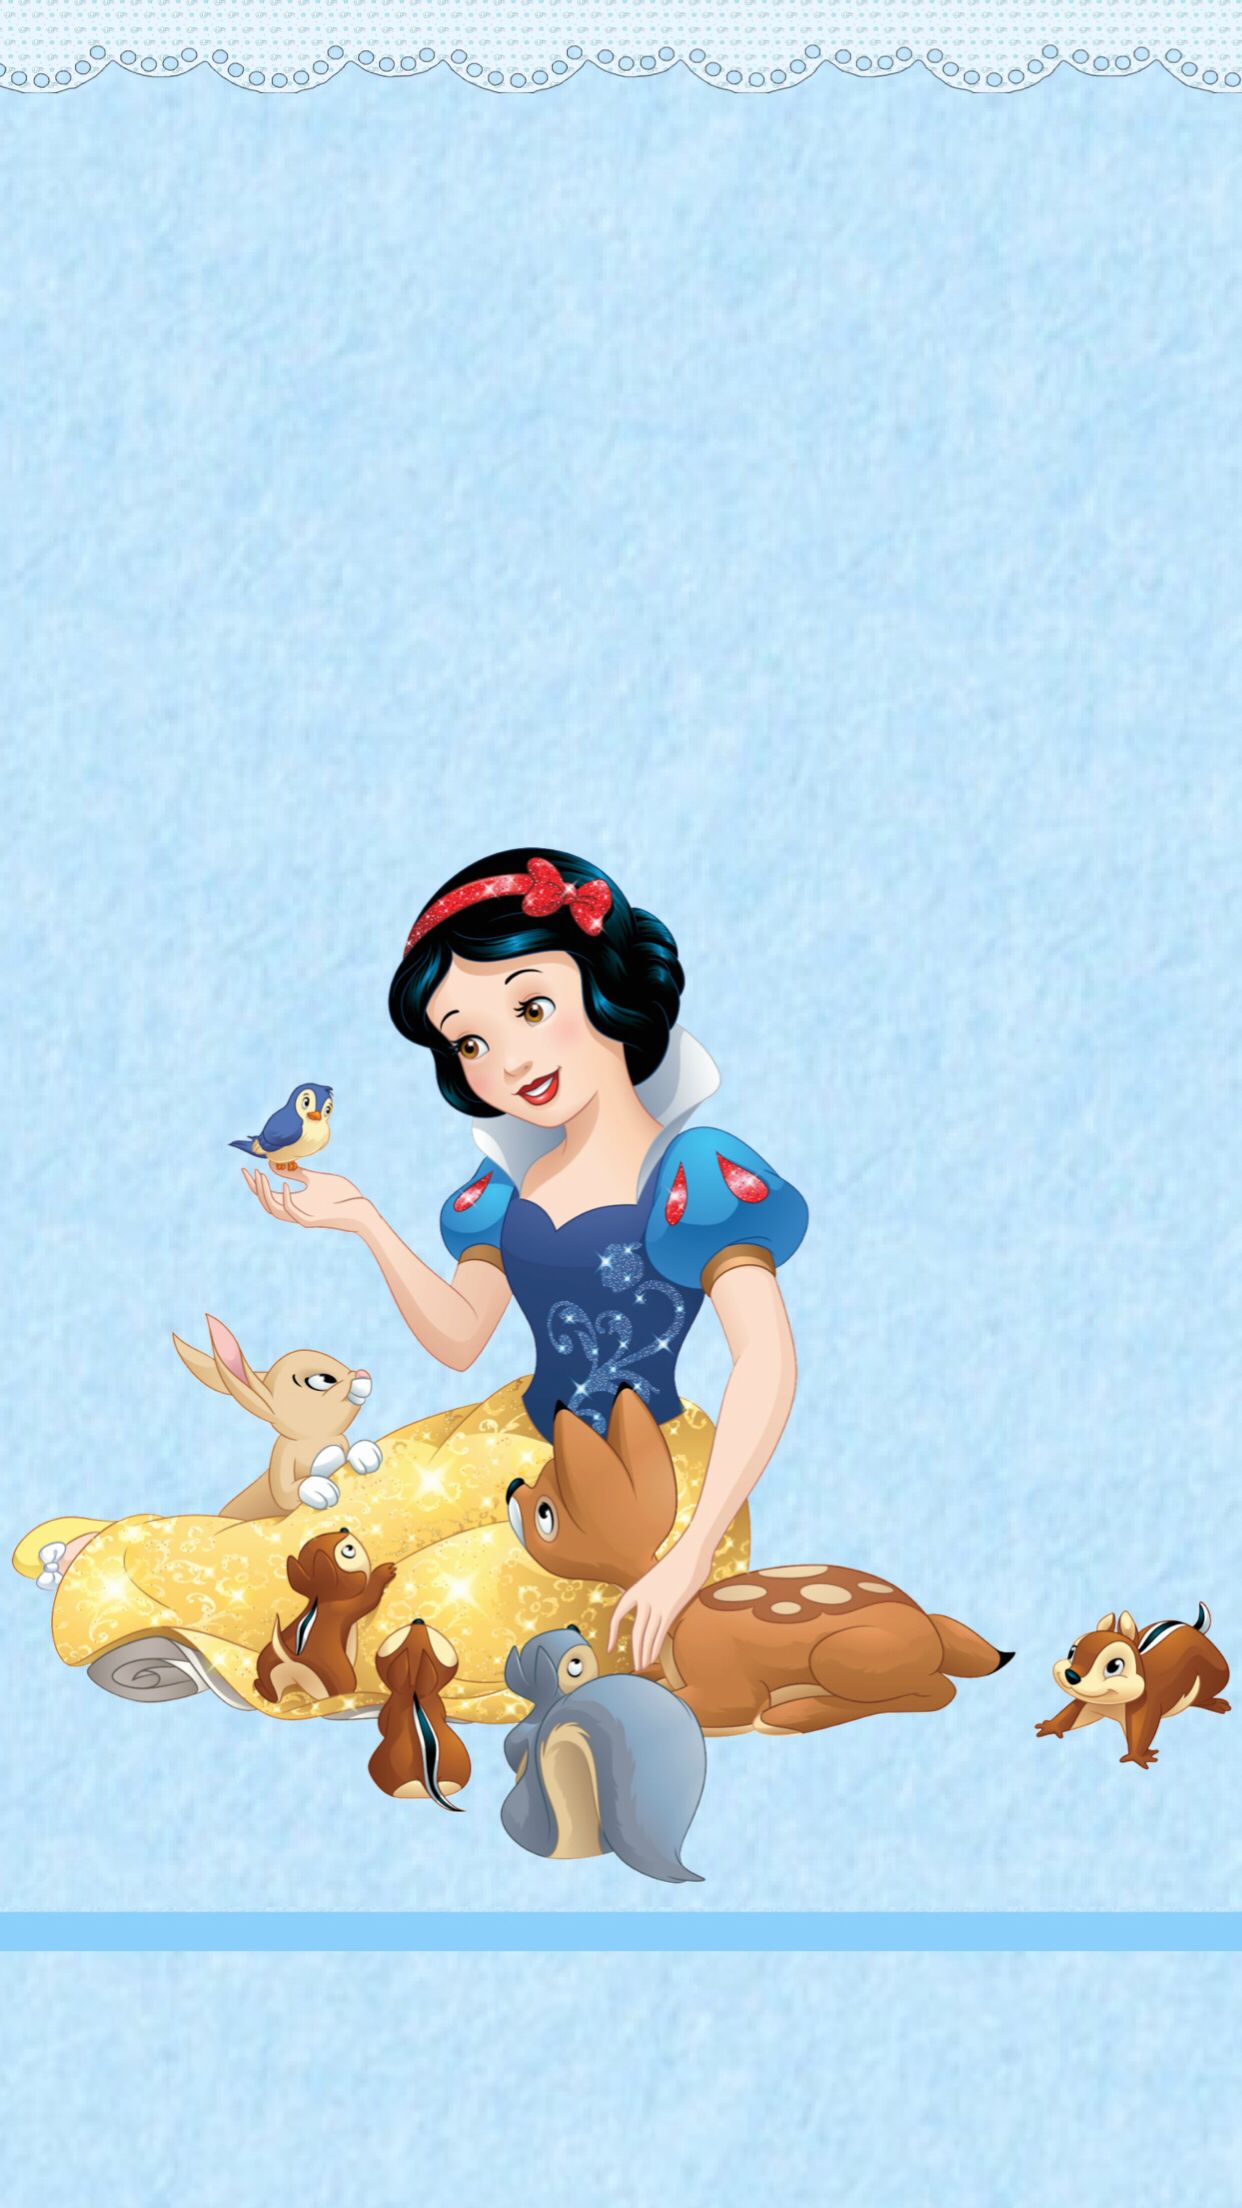 Snow White Disney Aesthetic - 1242x2208 Wallpaper - teahub.io